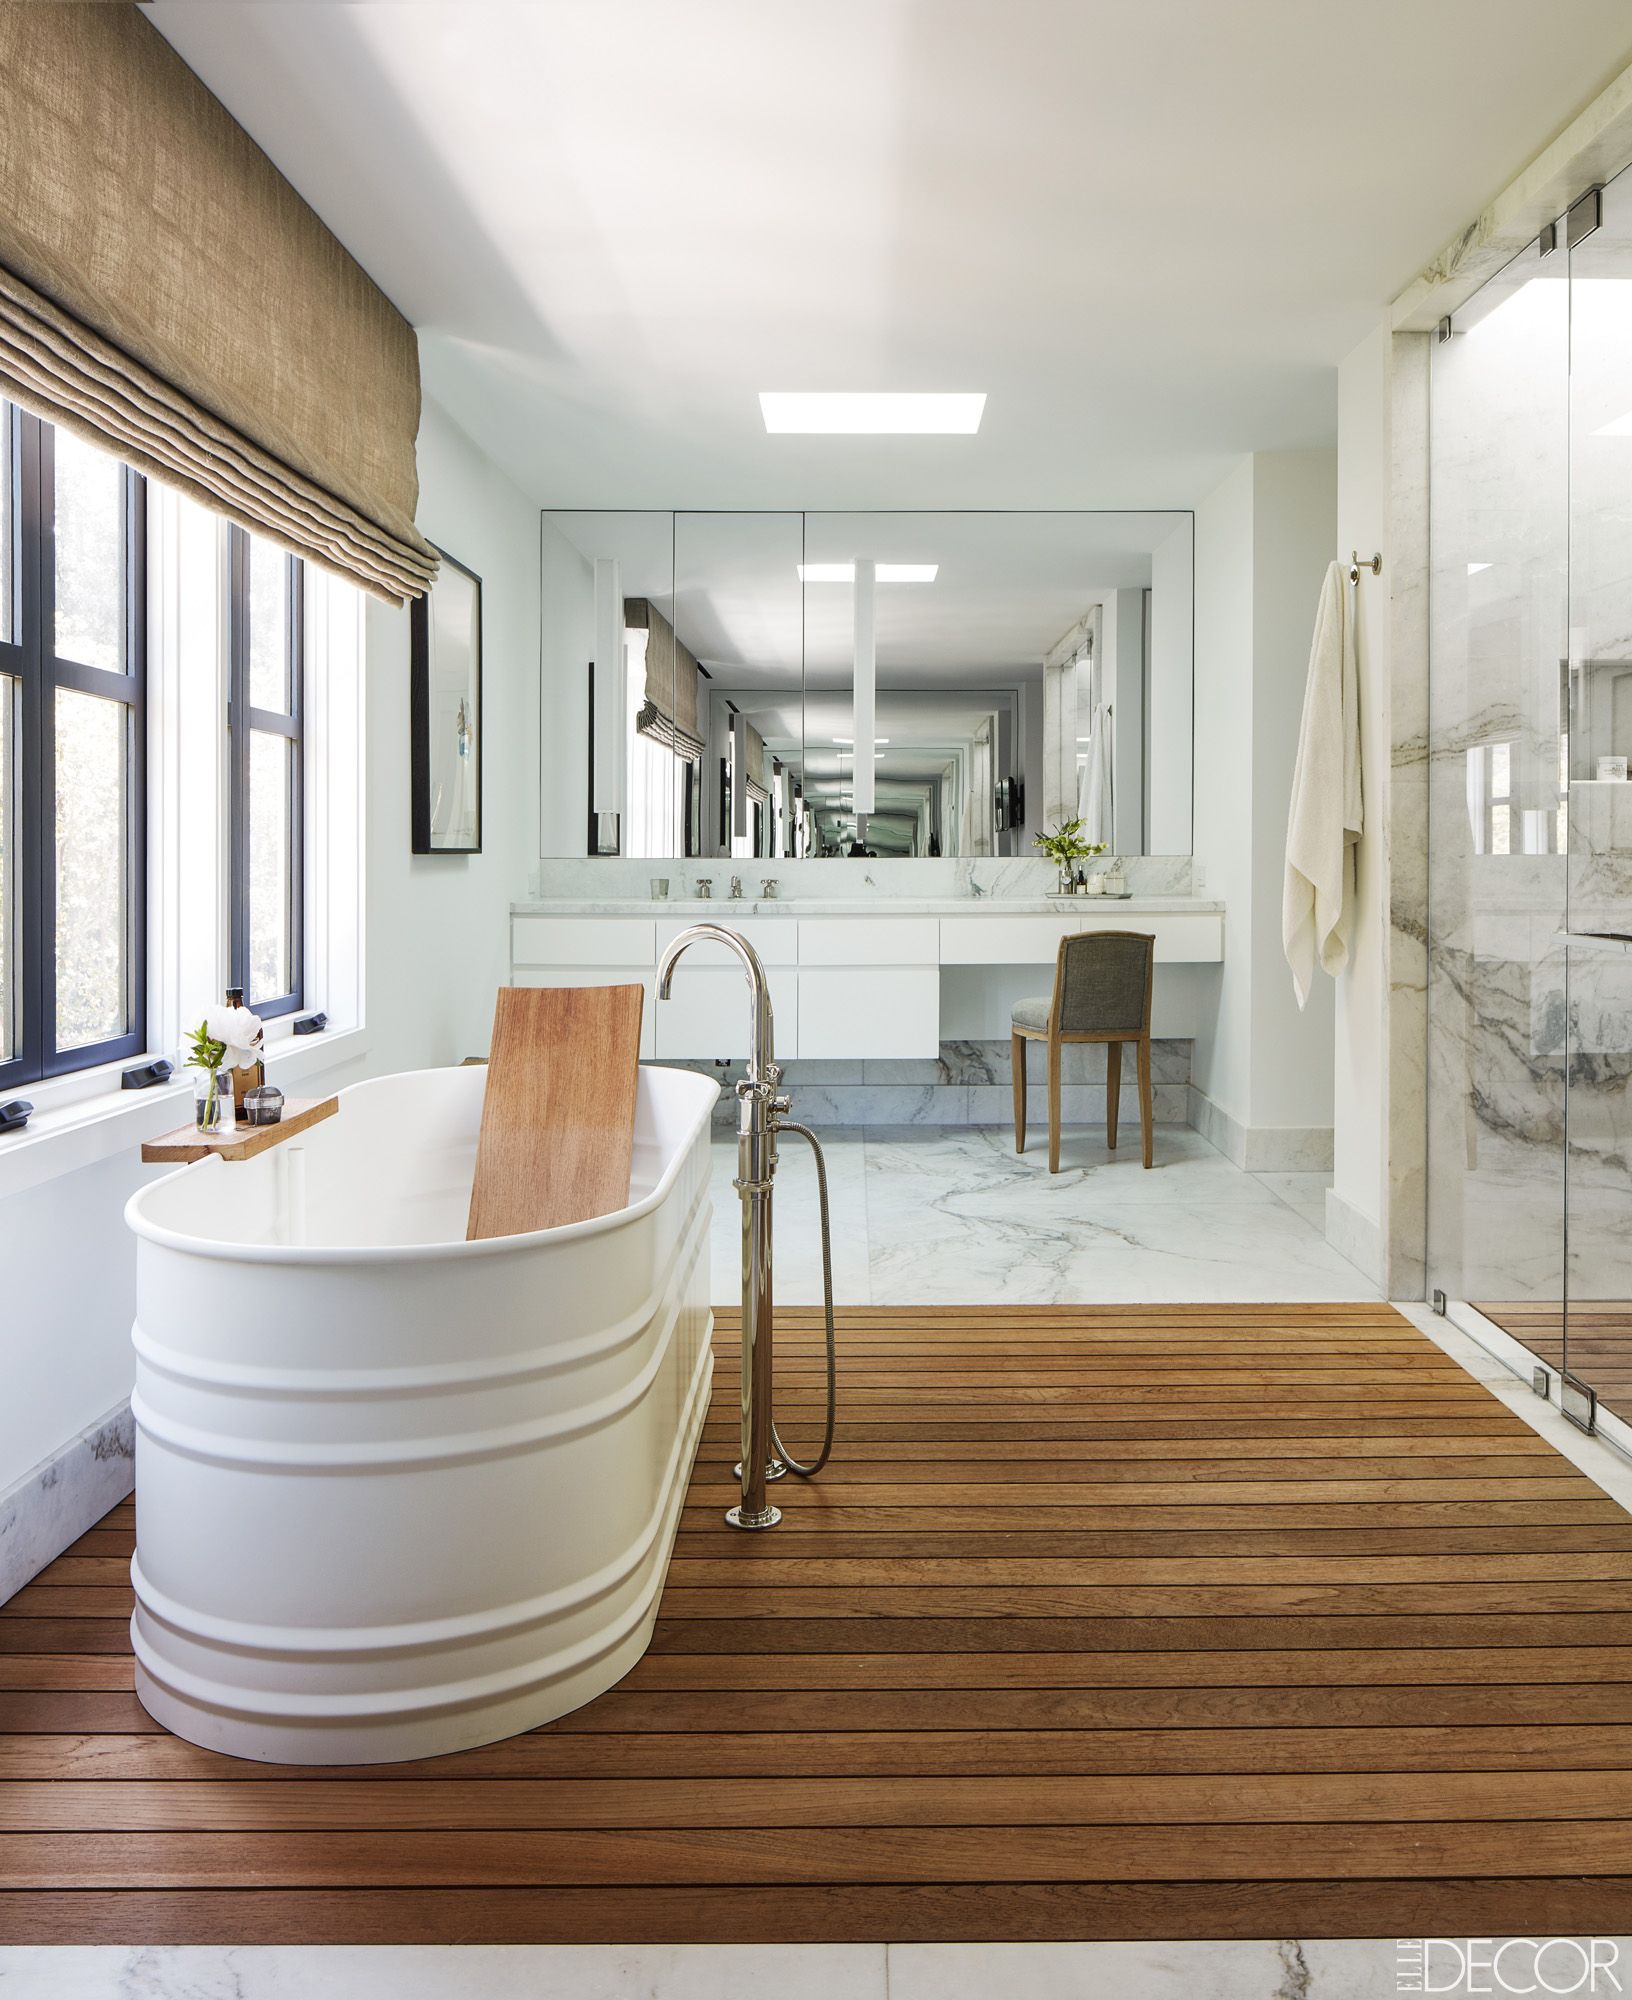 18 Ideas For Rustic Bathroom Decor   Room Ideas